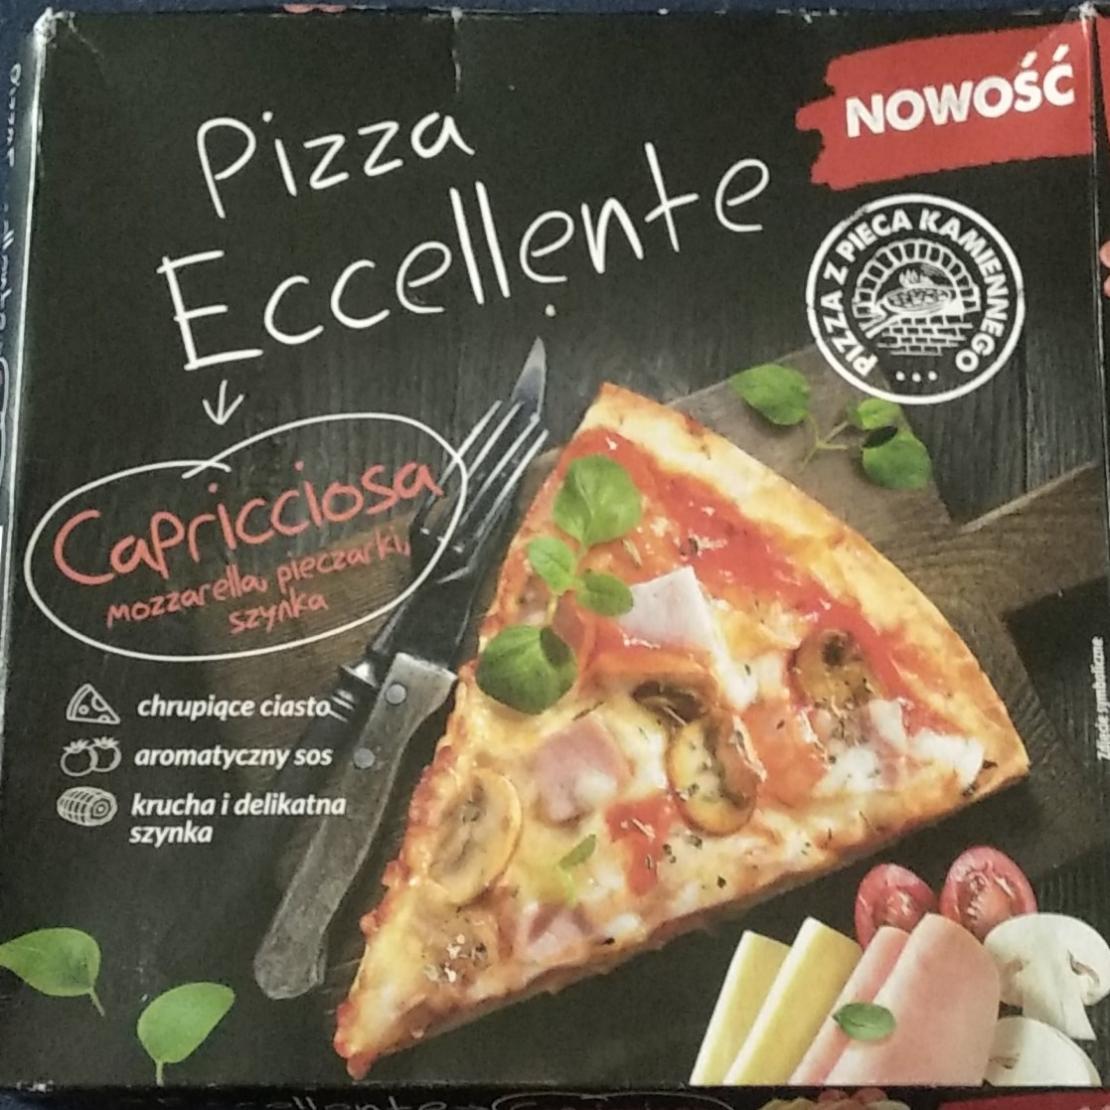 Фото - Пицца Pizza Eccellente Capricciosa